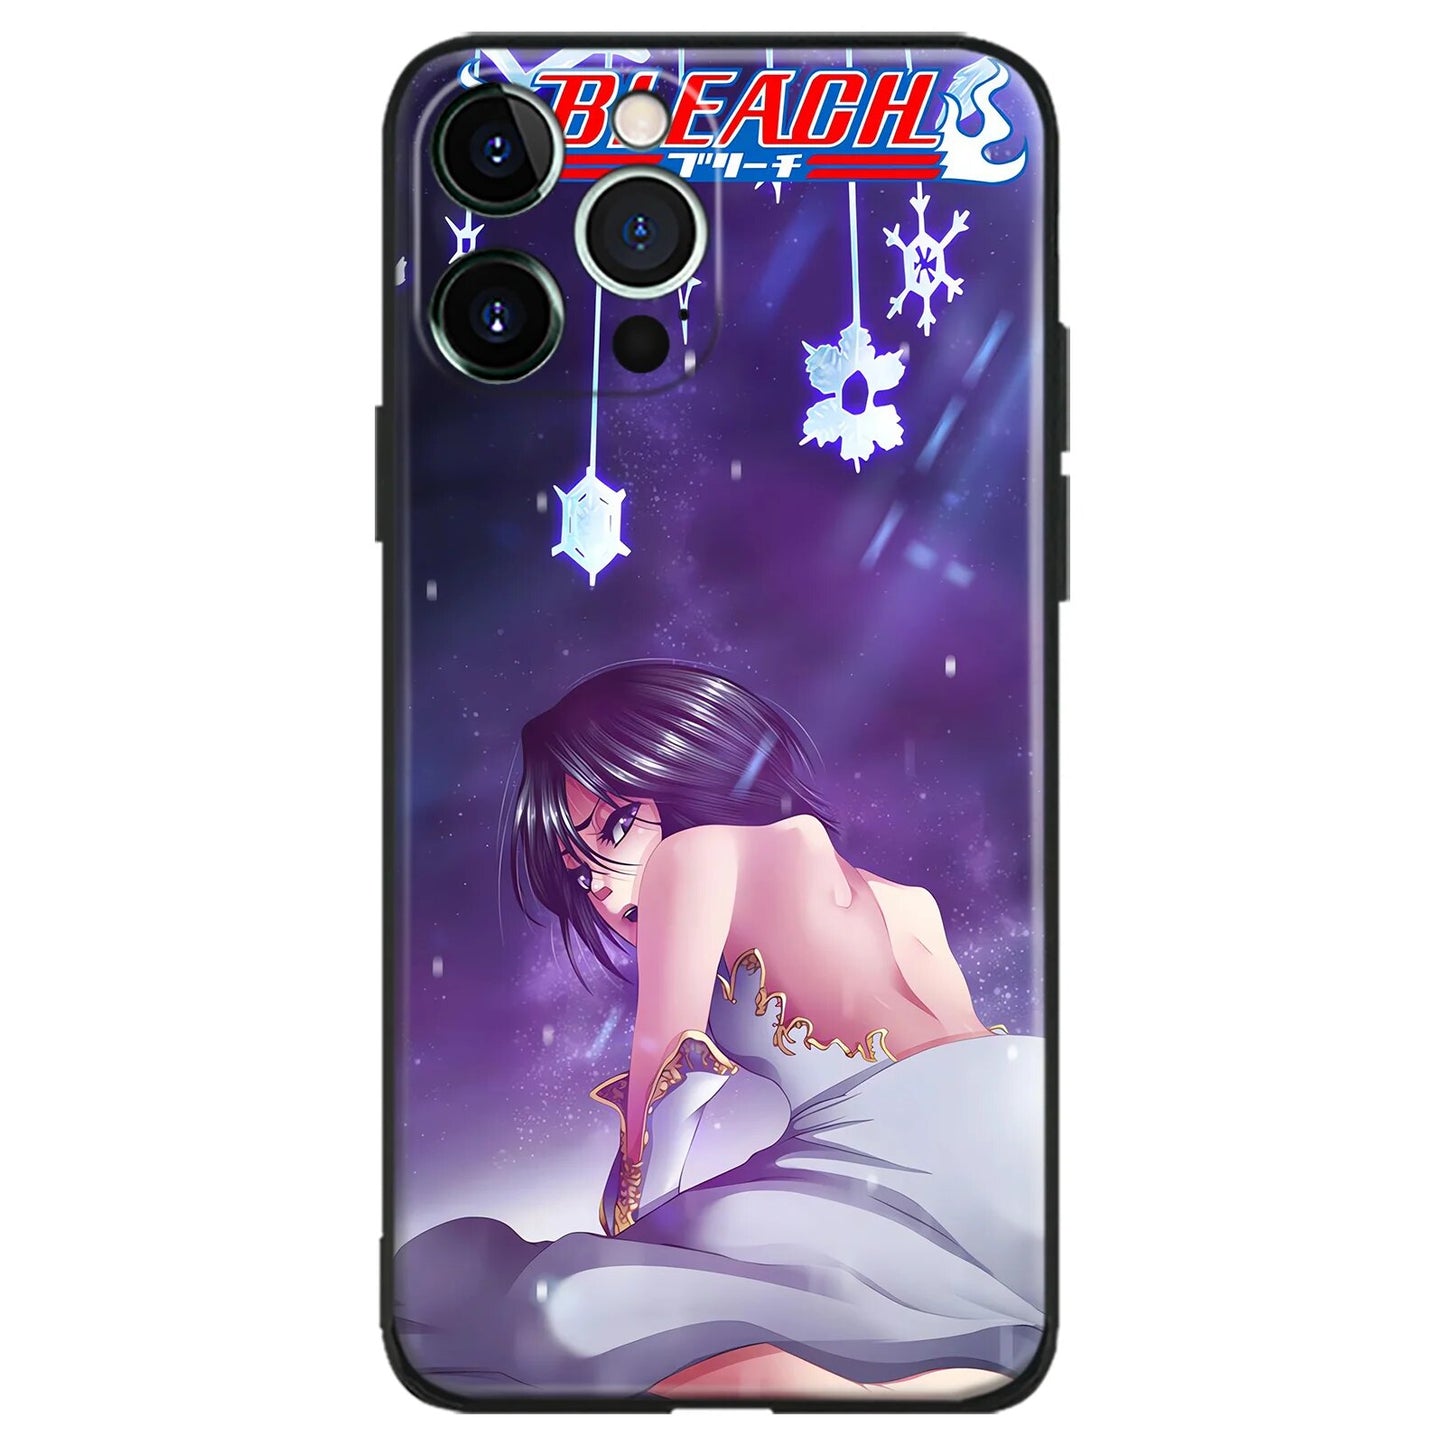 Rukia Kuchiki phone cases for IPhones